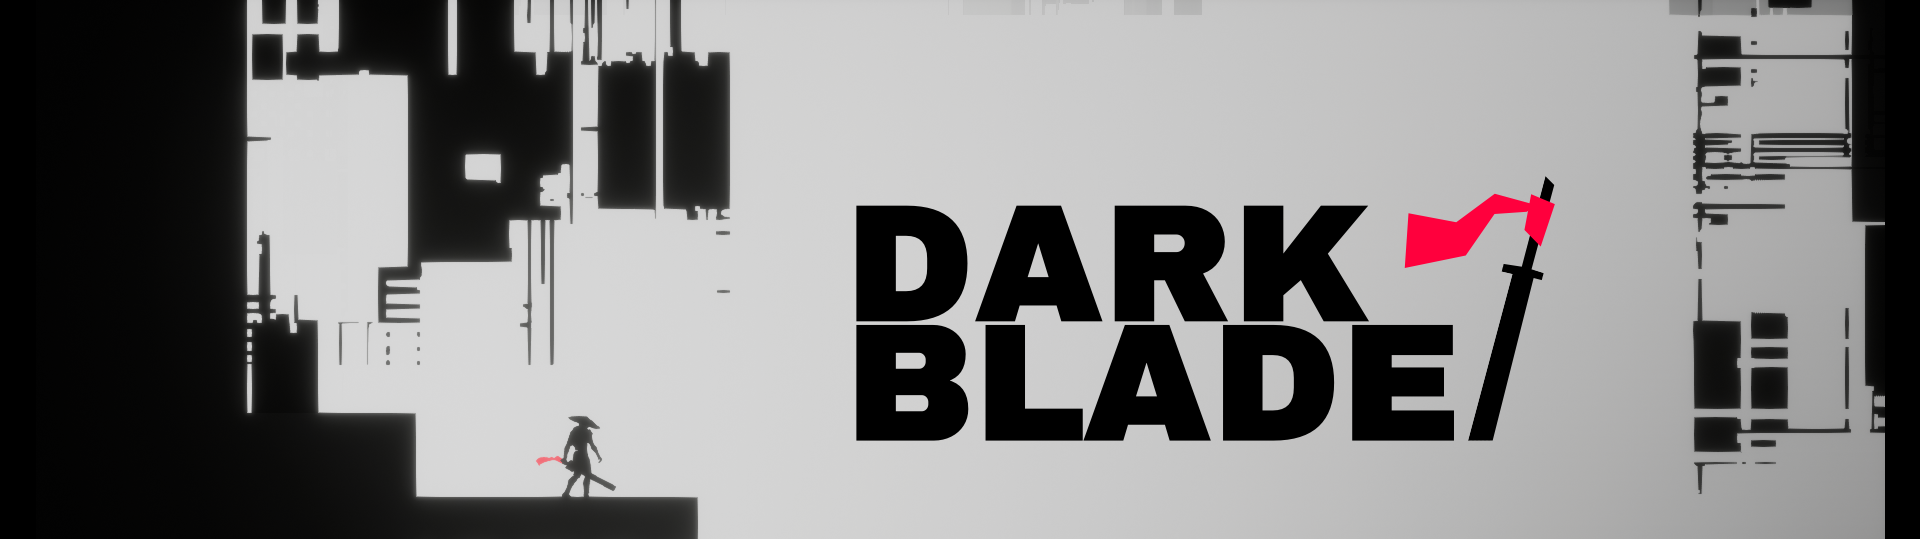 Dark Blade by Zakroutil